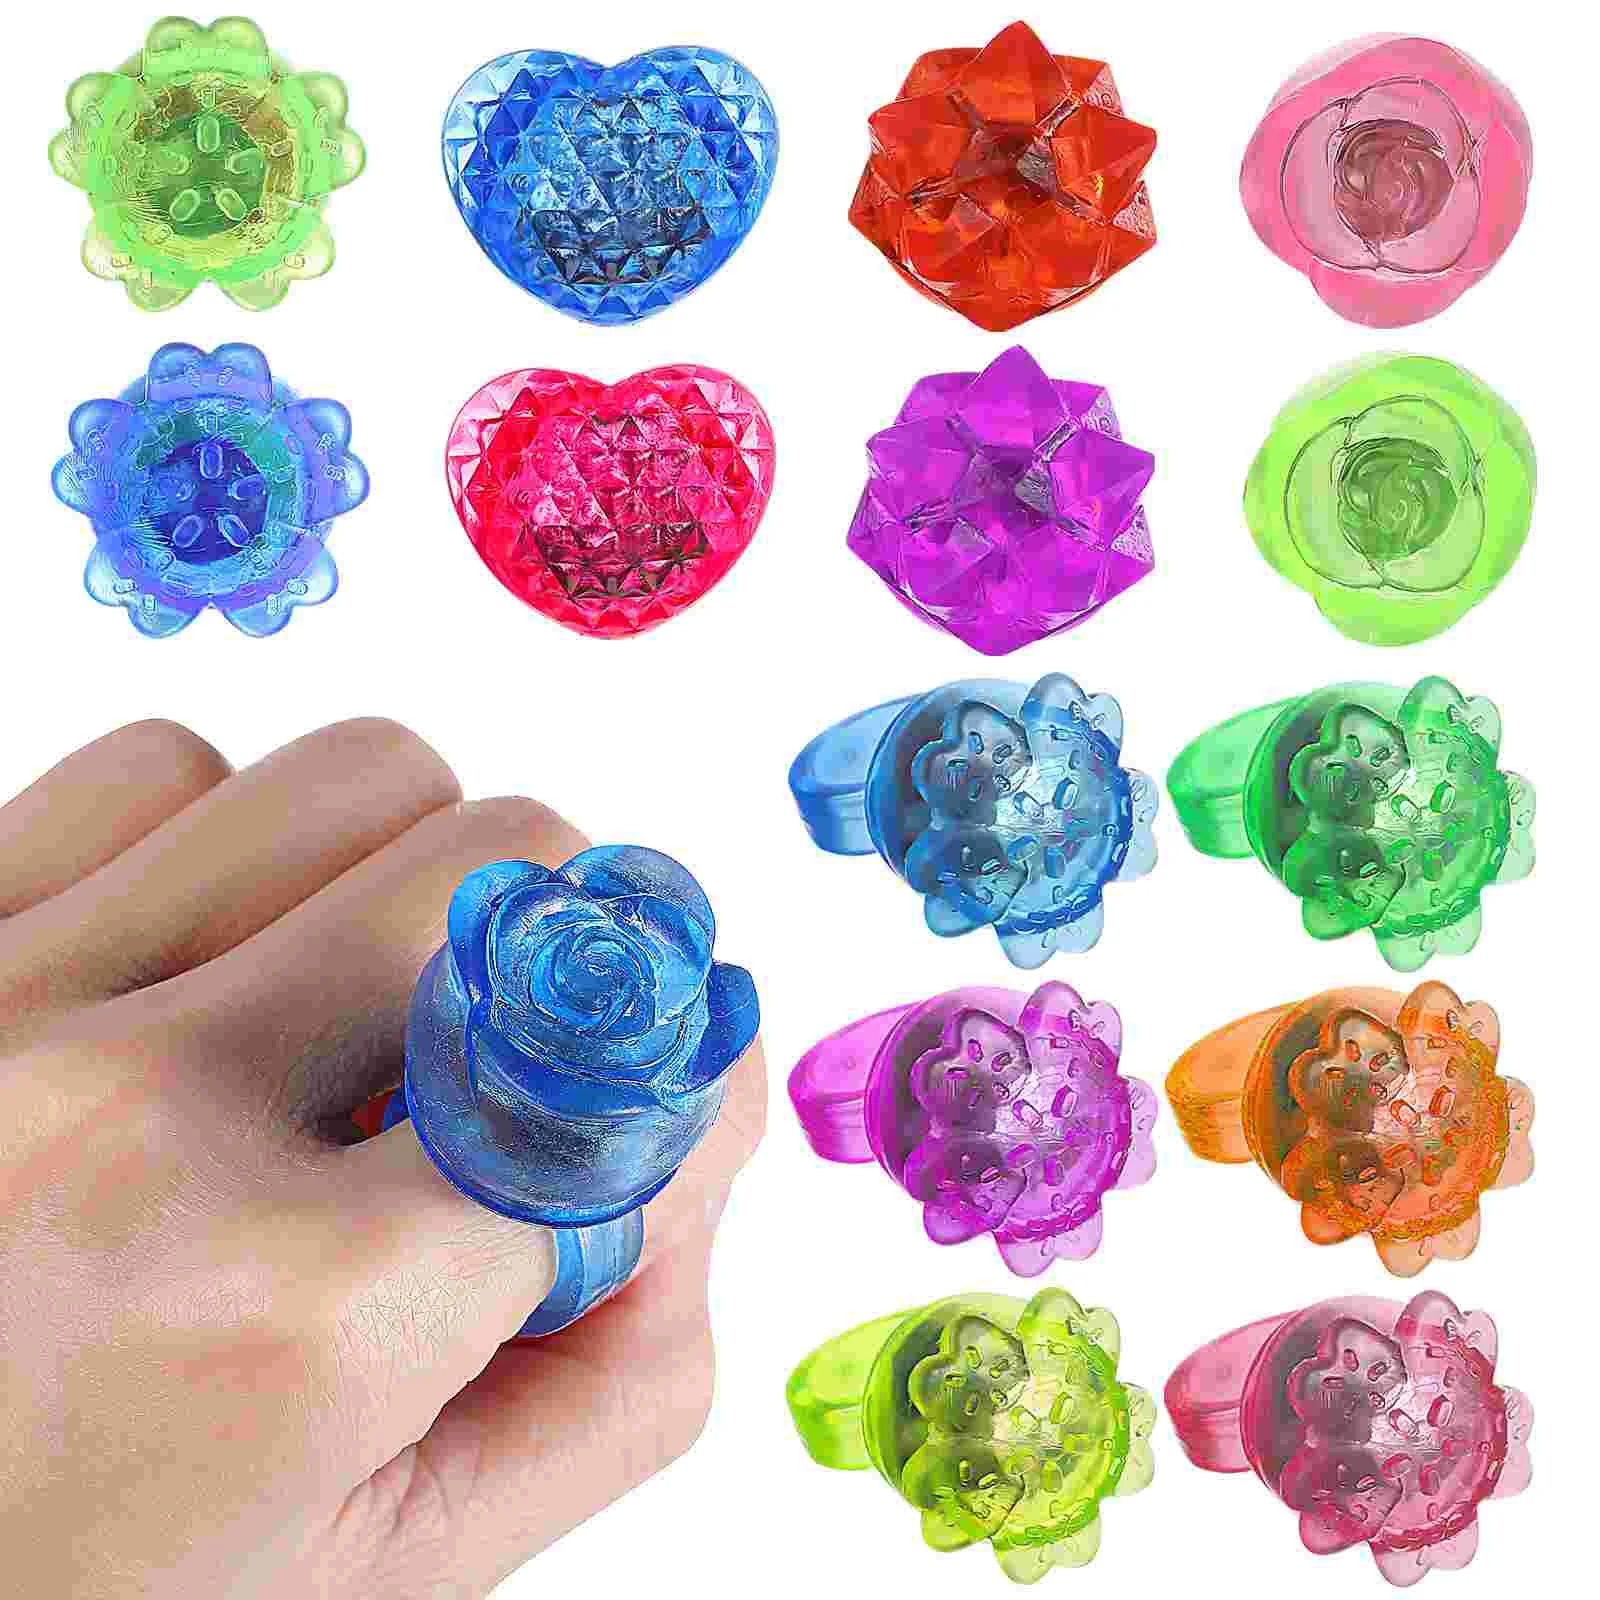 

24 Pcs LED Finger Rings Love Flower Crown Shape Flashing Rings Jelly Rings Light Up Toys for Raves Parties